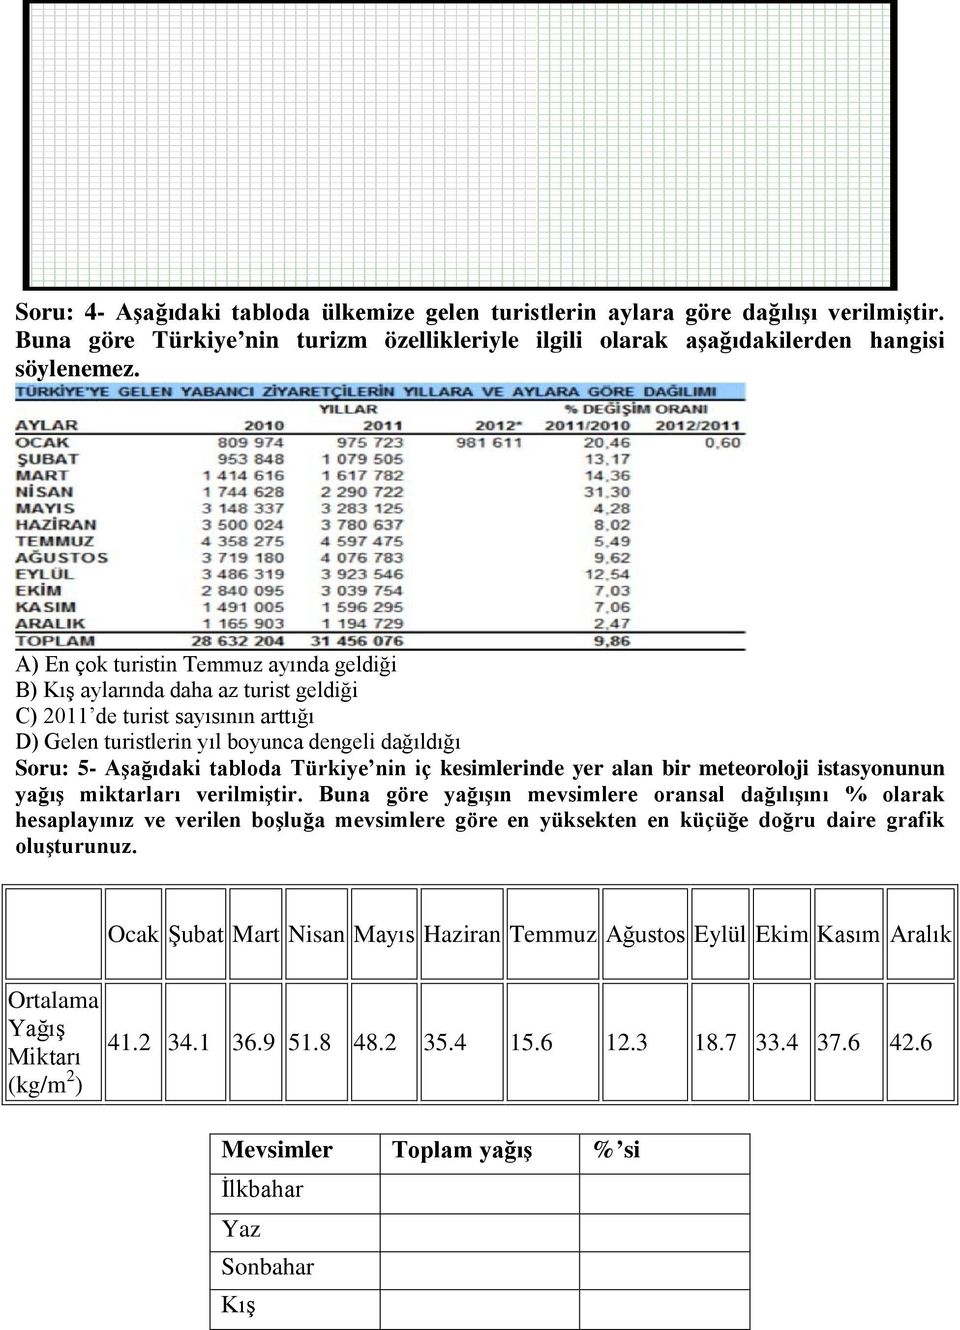 Türkiye nin iç kesimlerinde yer alan bir meteoroloji istasyonunun yağış miktarları verilmiştir.